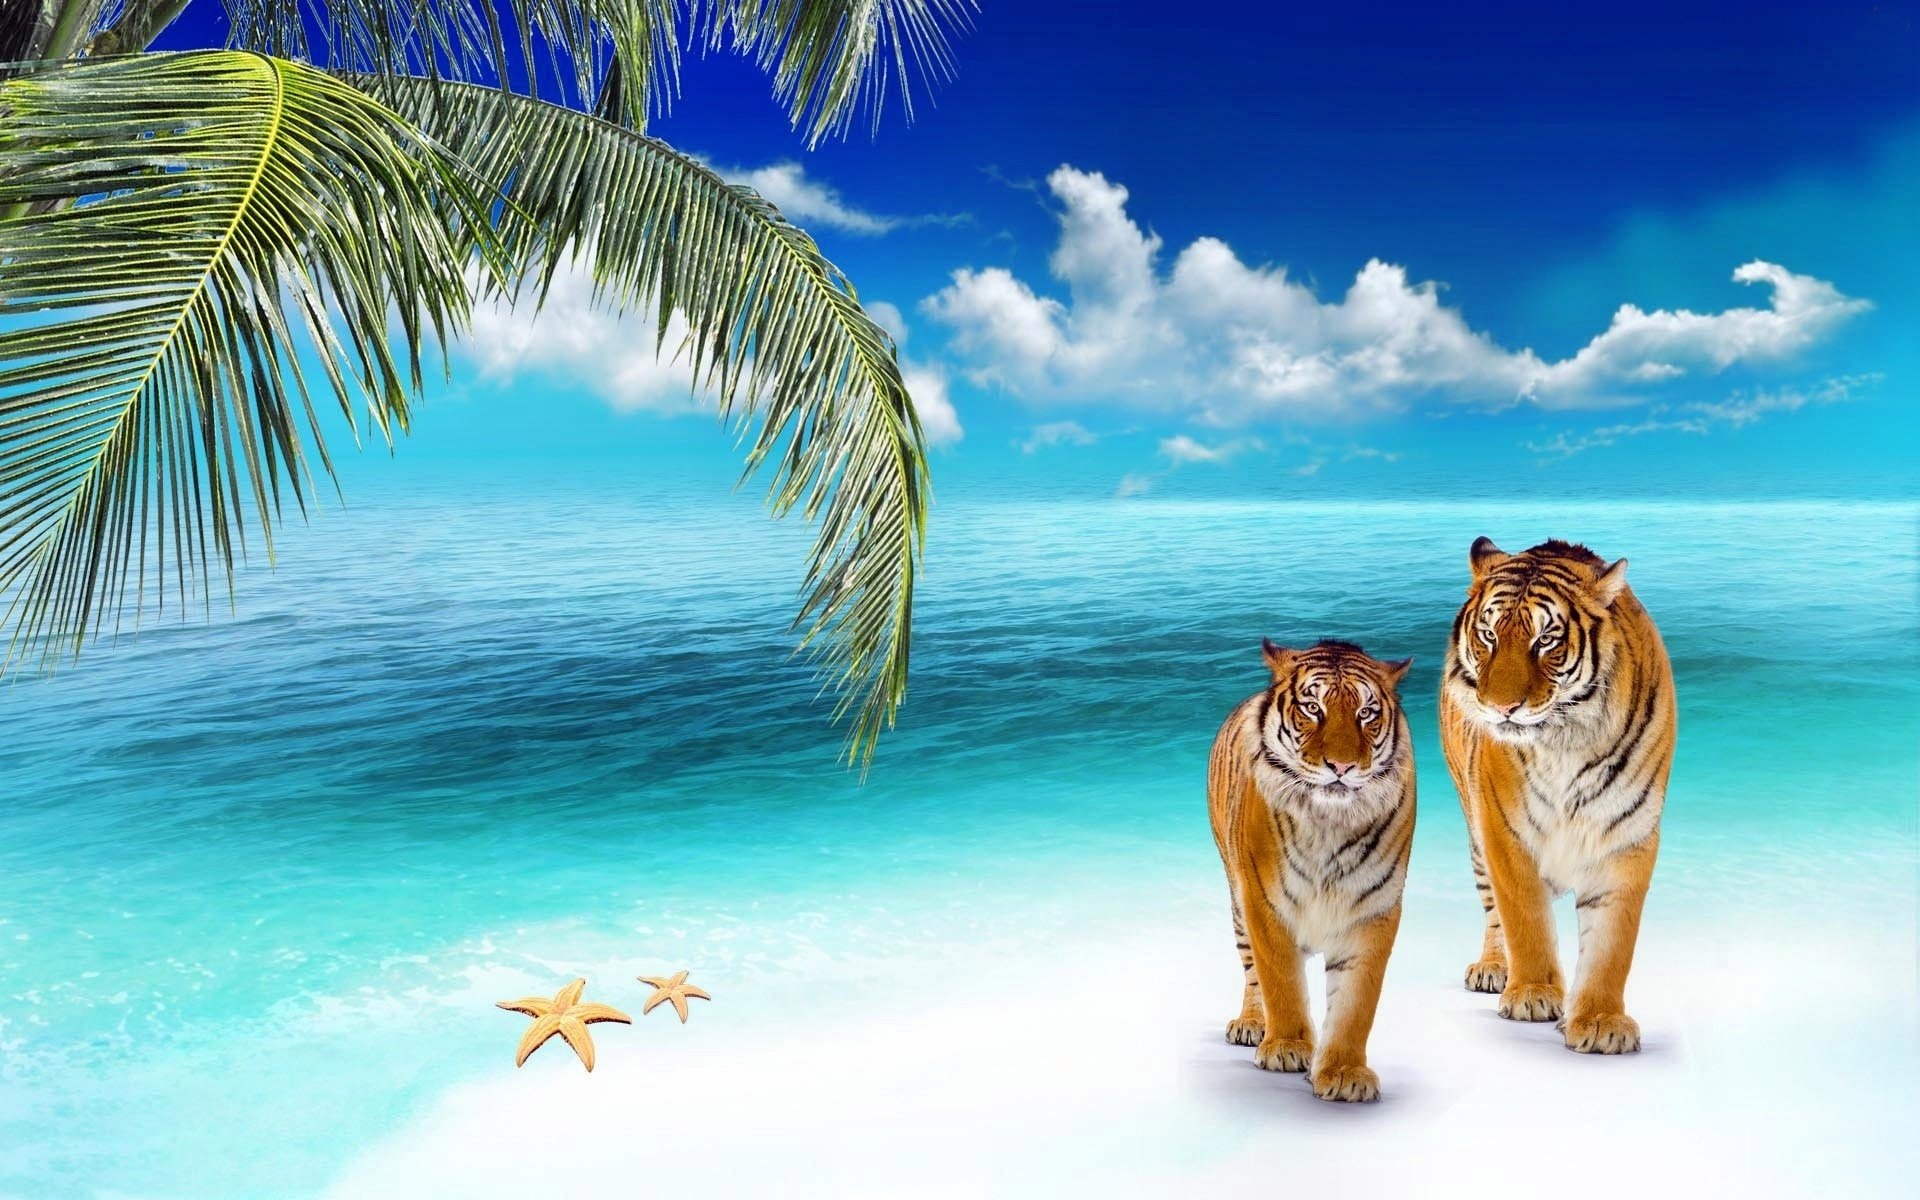 Скачать картинку Животные, Тигр, Кошки в телефон бесплатно.